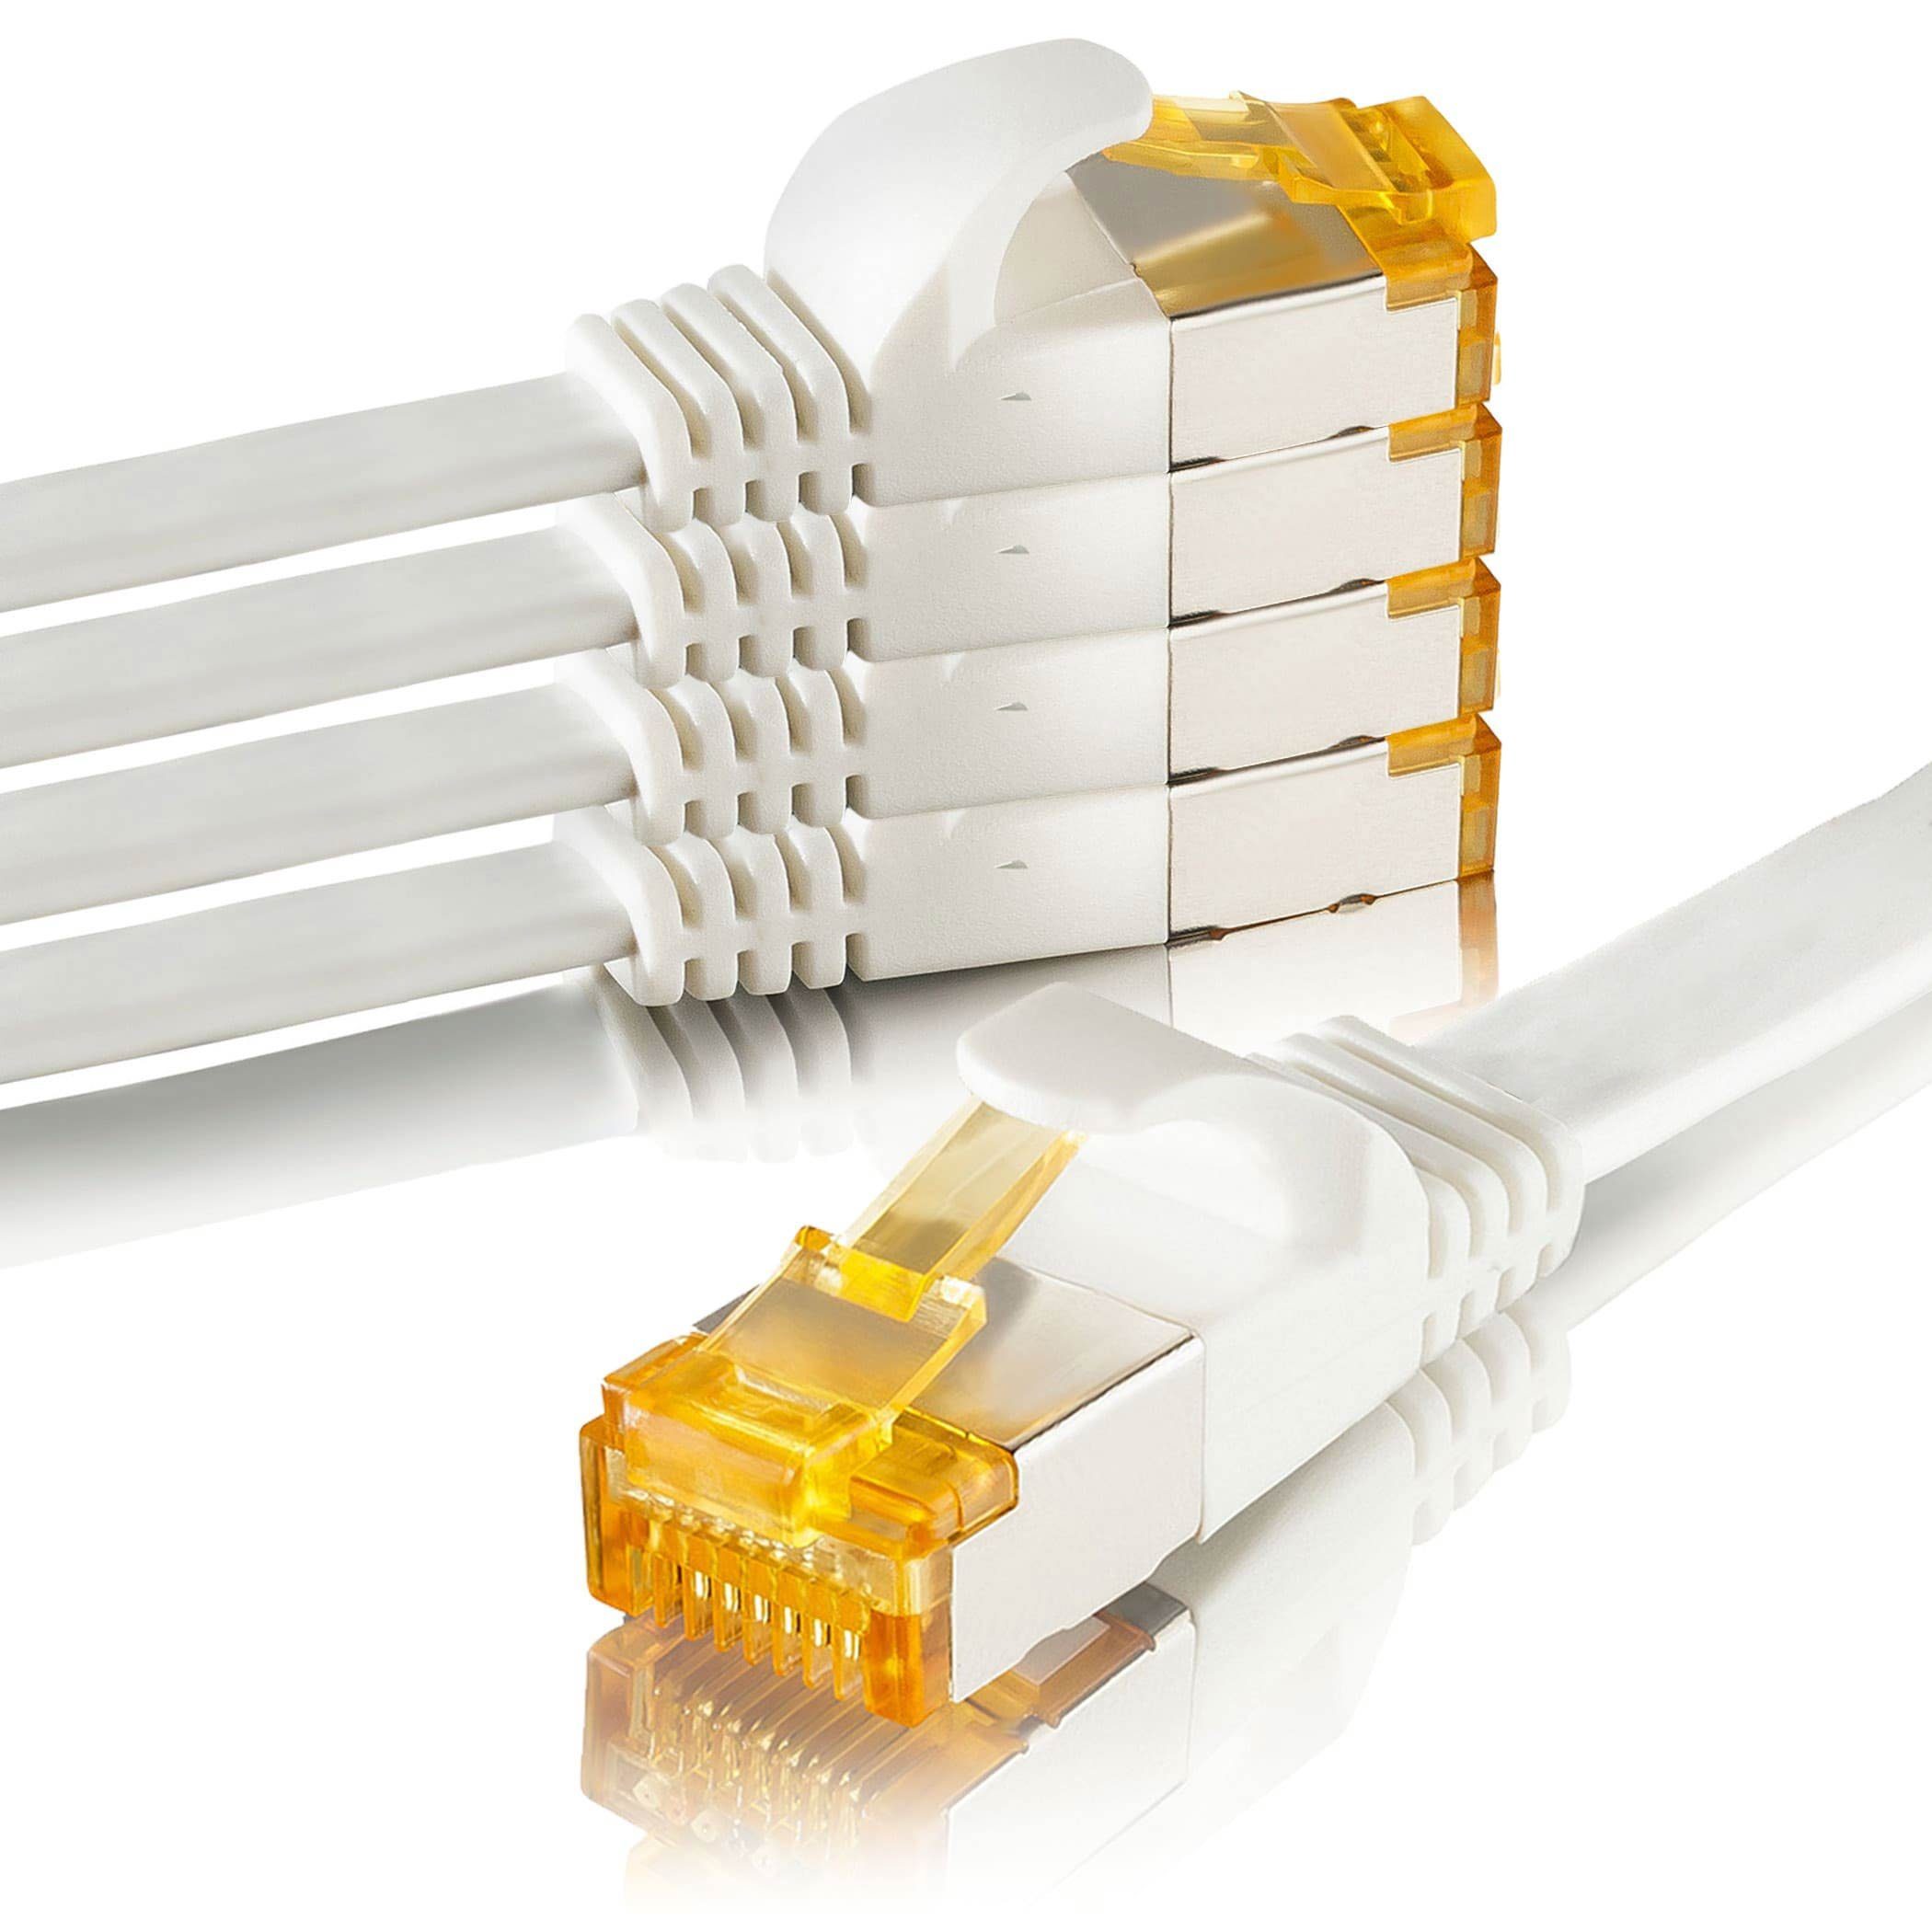 SEBSON »5x LAN Kabel 5m CAT 7 flach, Netzwerkabel 10 Gbit/s, RJ45 Stecker  für Router, PC, TV, NAS, Spielekonsolen - Ethernetkabel U-FTP abgeschirmt«  Netzkabel online kaufen | OTTO